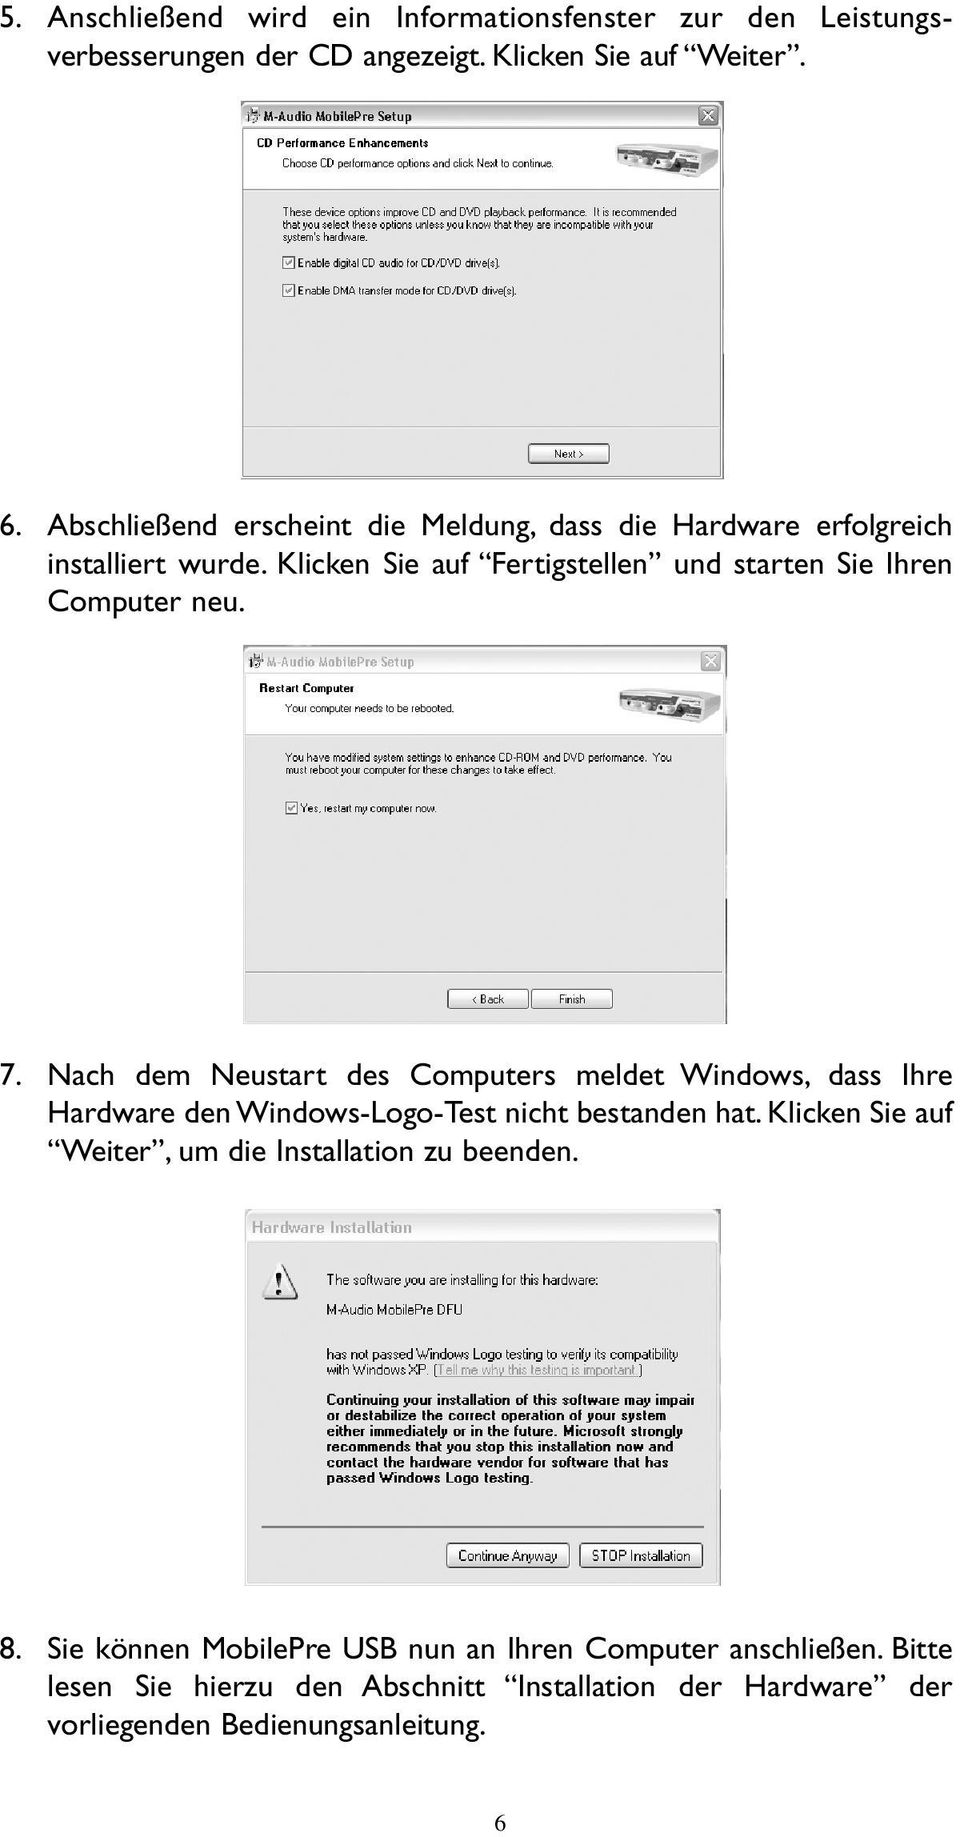 7. Nach dem Neustart des Computers meldet Windows, dass Ihre Hardware den Windows-Logo-Test nicht bestanden hat.